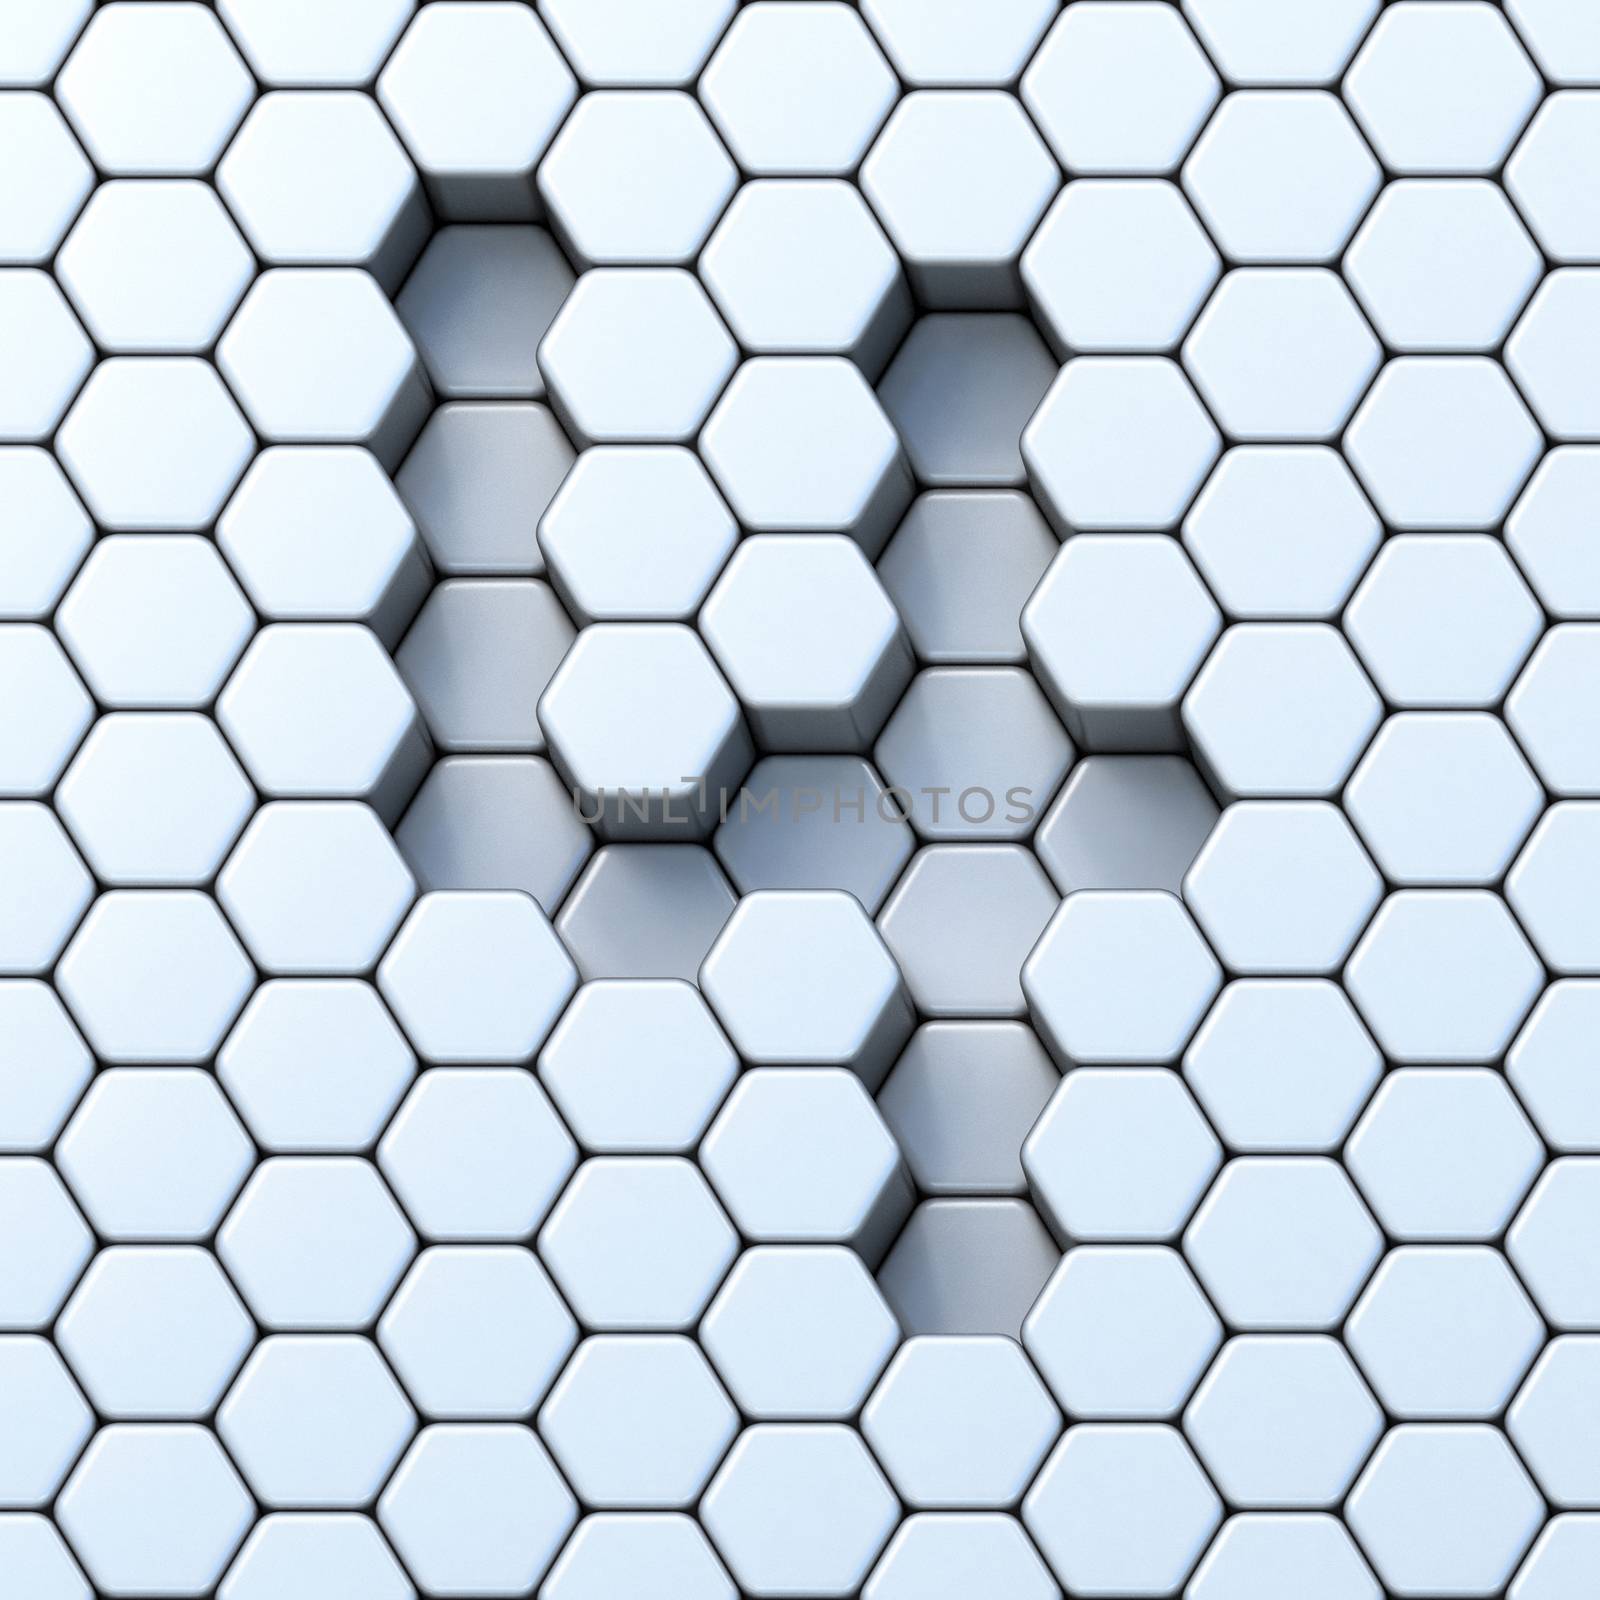 Hexagonal grid number FOUR 4 3D render illustration